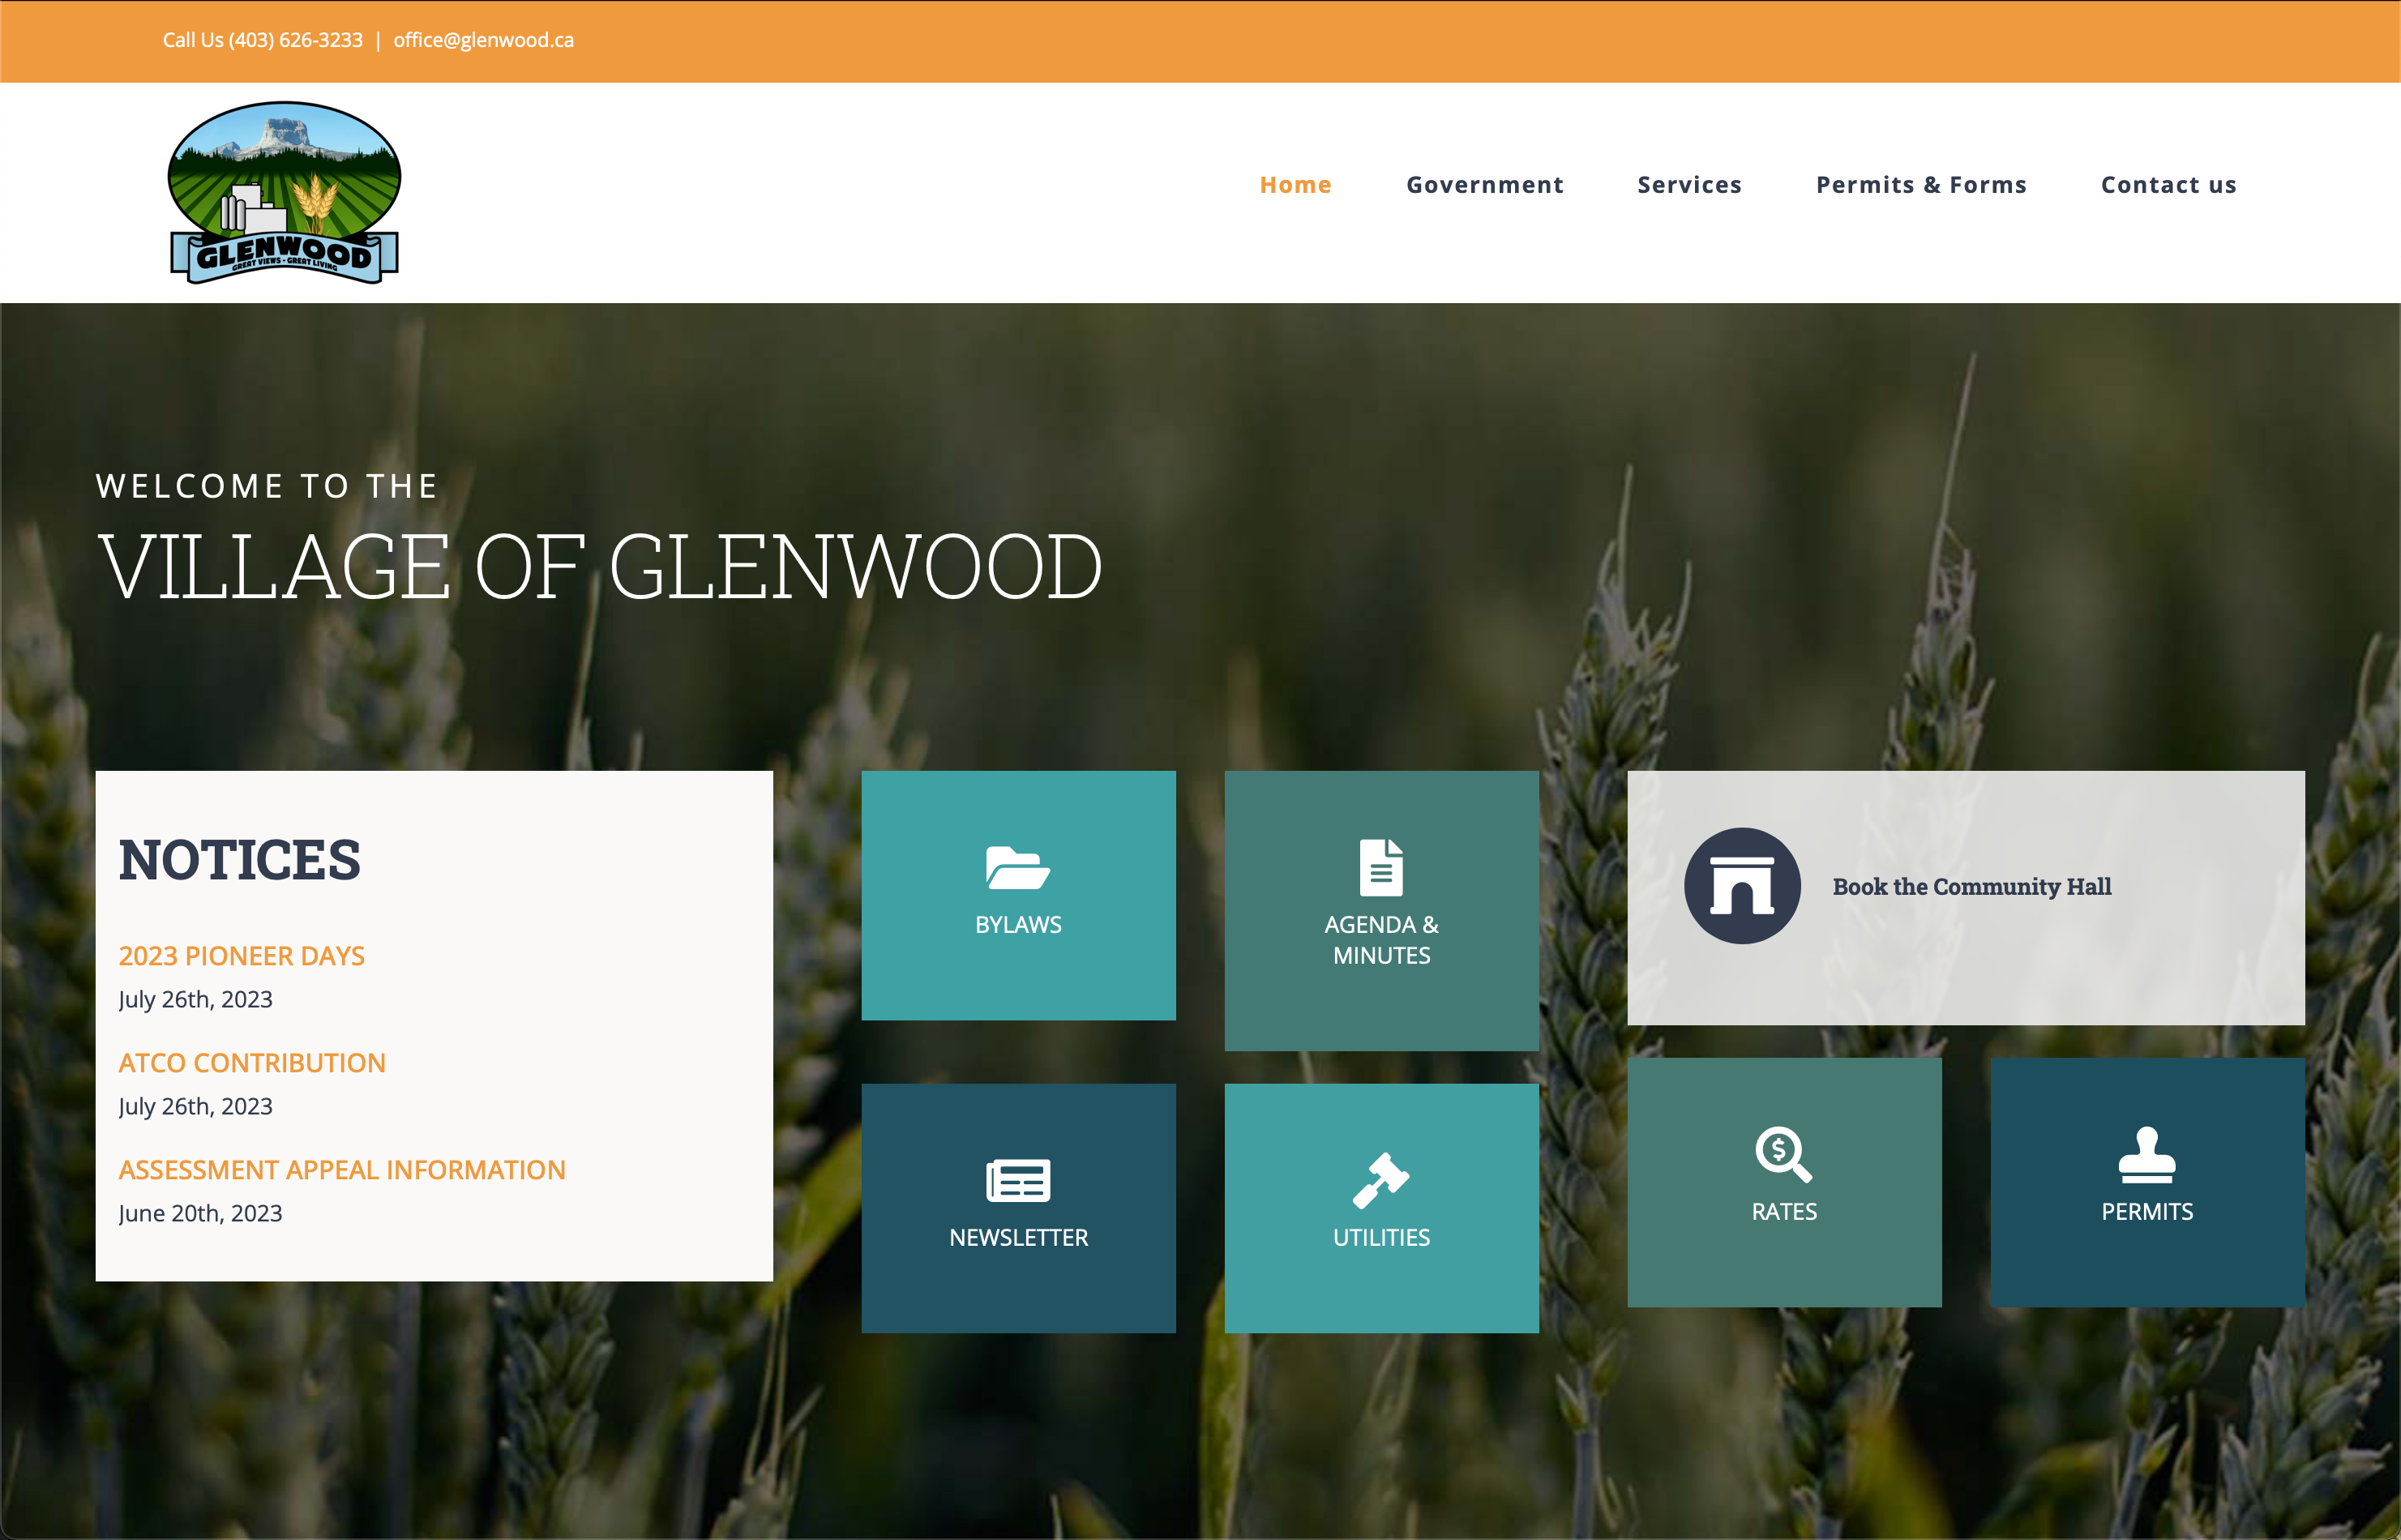 Village of Glenwood website screen capture